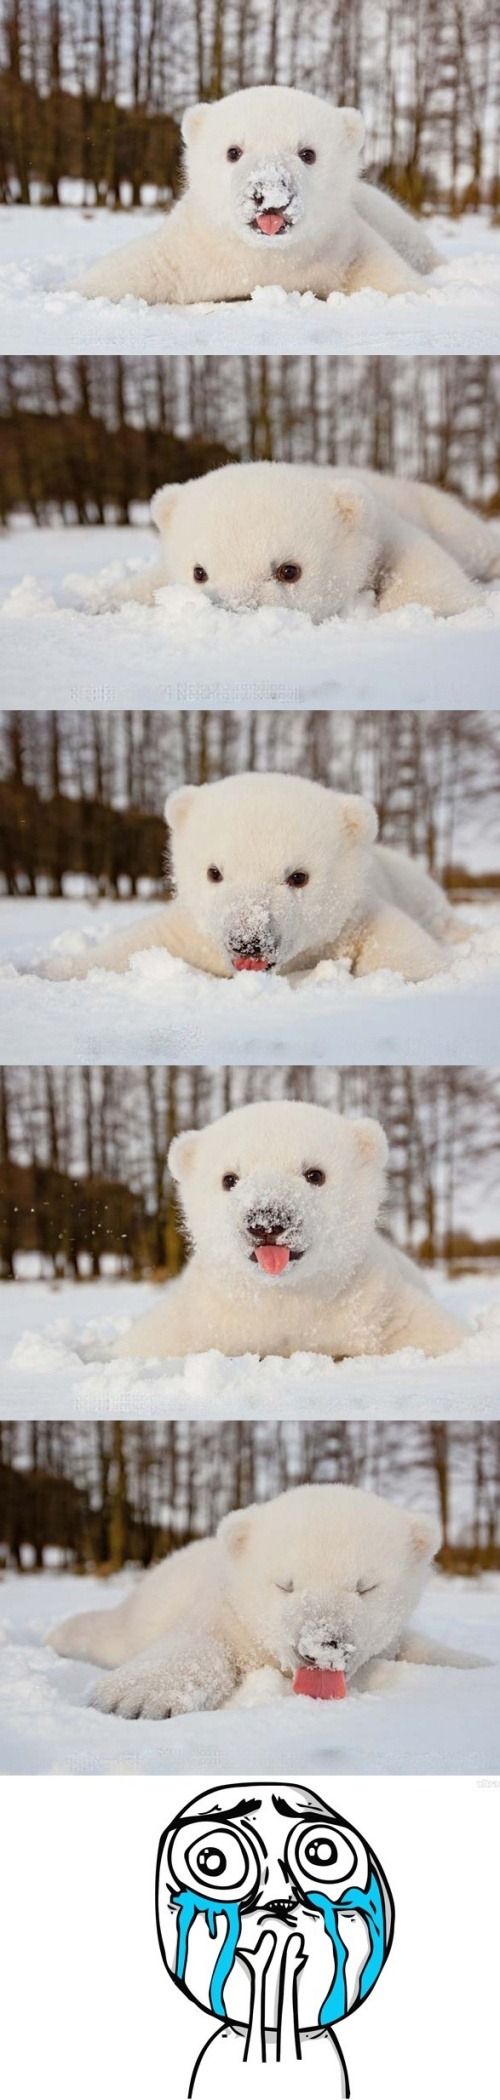 Baby polar bear exploring the snow.